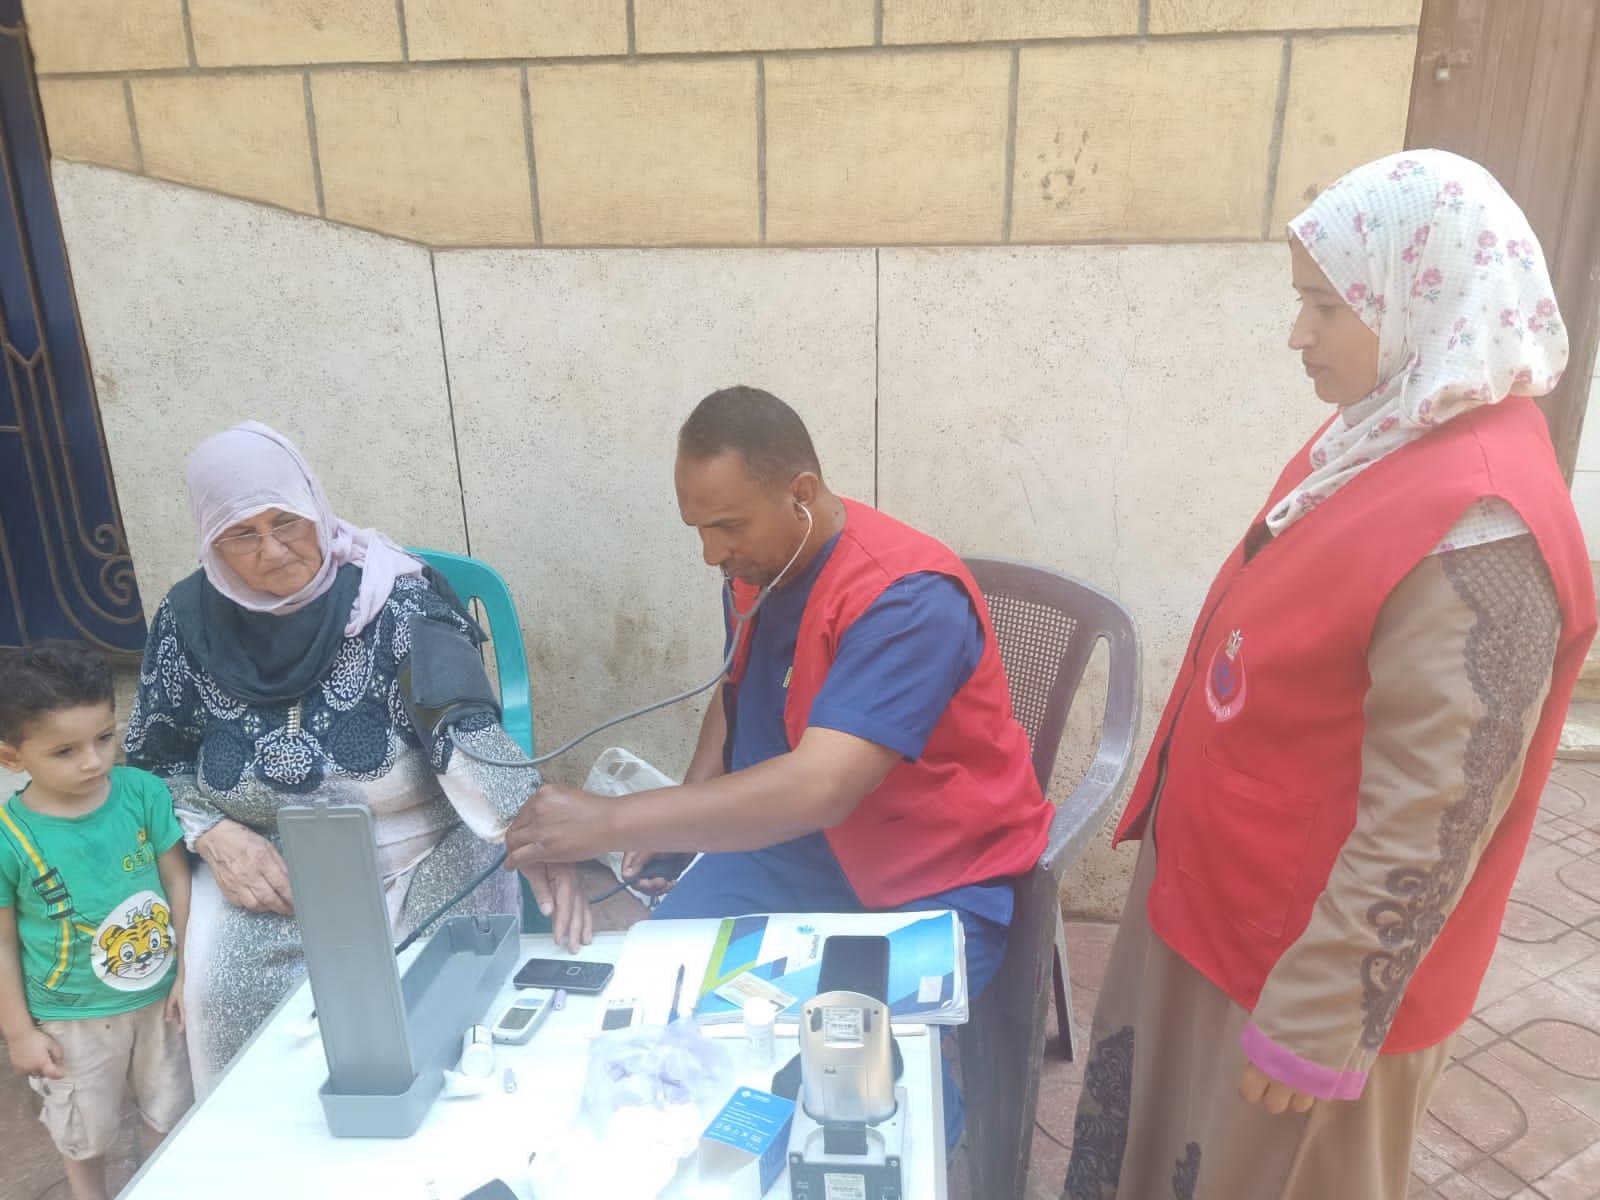 تقديم الخدمات الطبية  ل155 الف مواطن خلال عيد الأضحى المبارك بالشرقية 